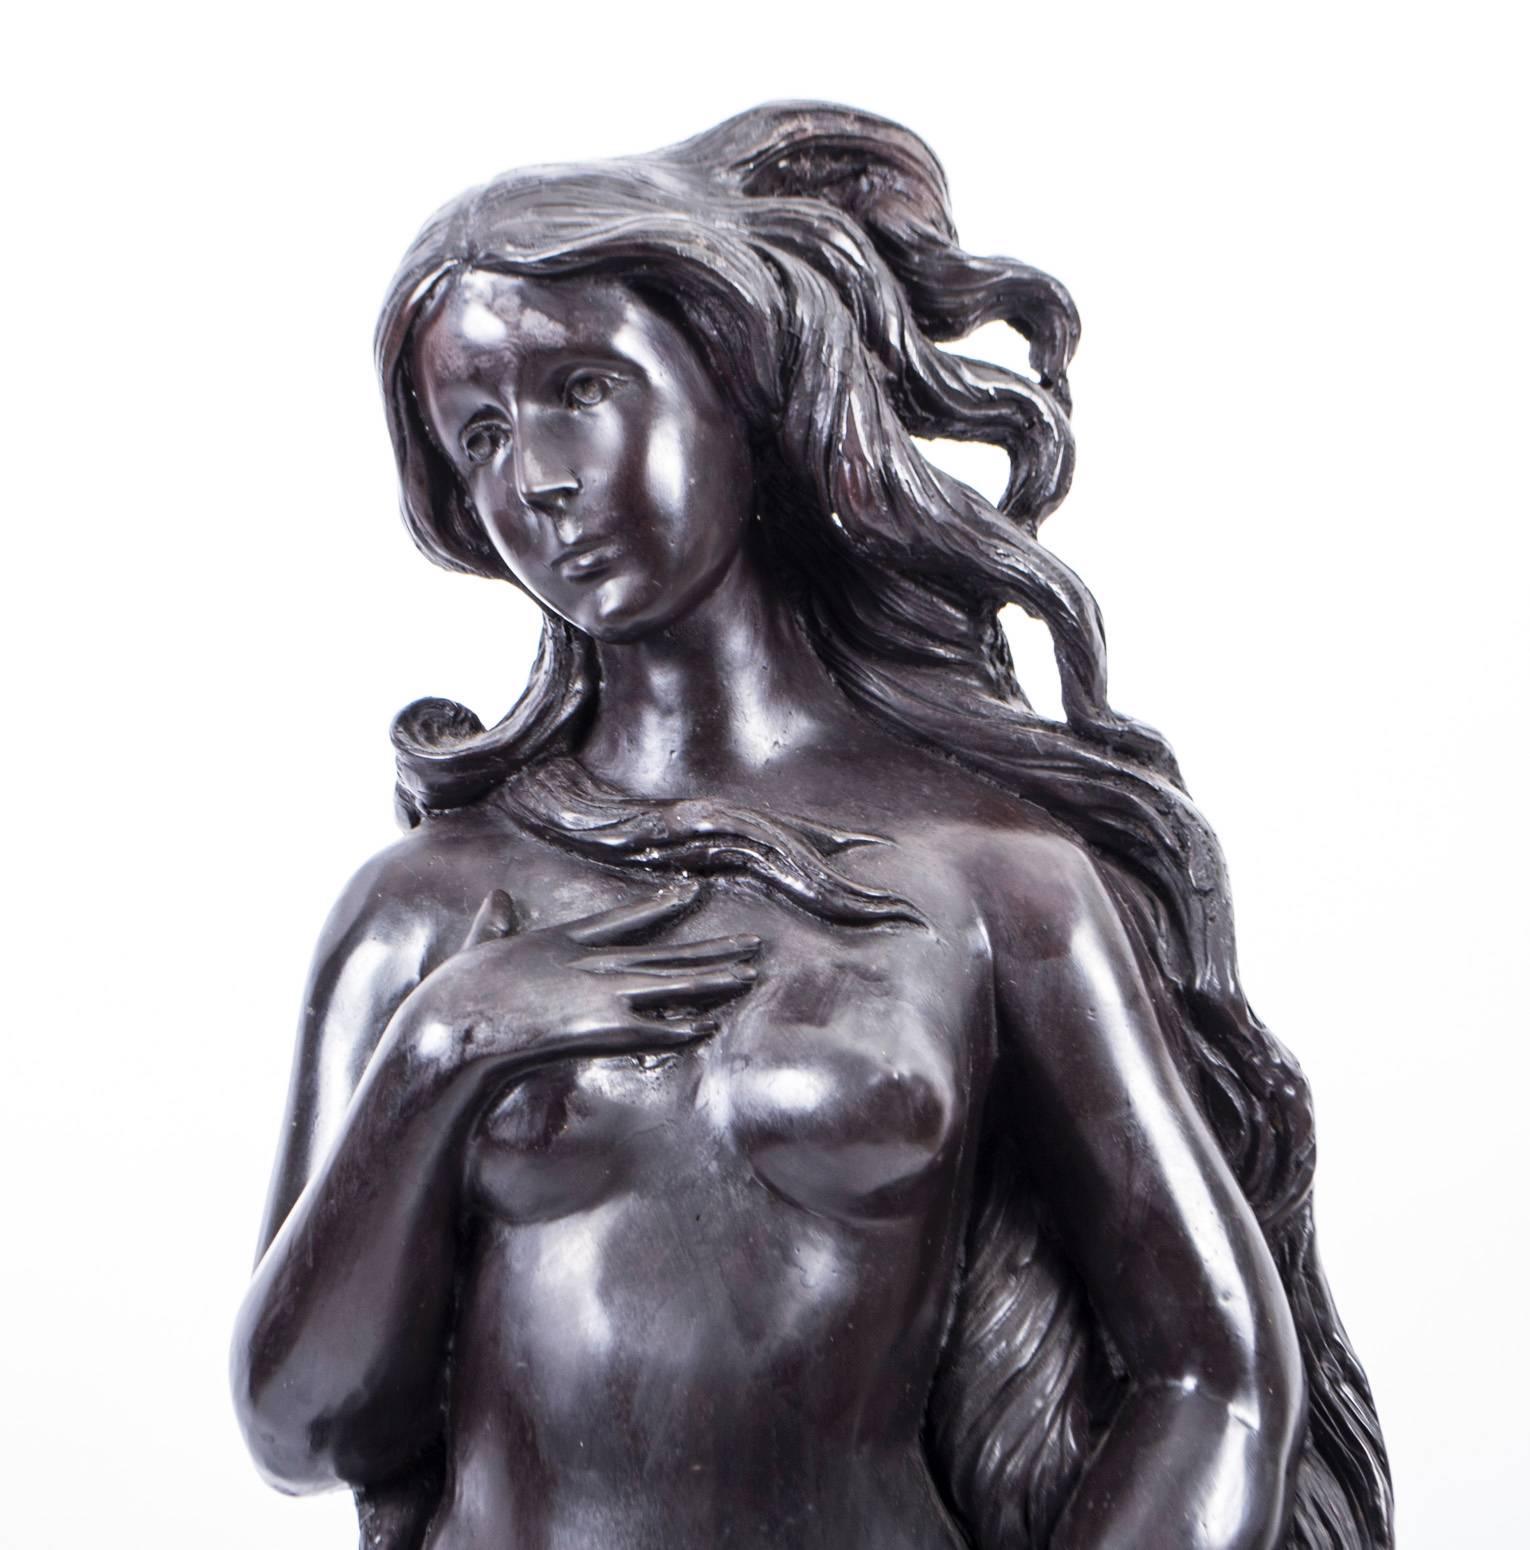 Diese Skulptur stellt die Göttin Venus dar, die als ausgewachsene Frau dem Meer entsteigt und am Ufer des Meeres ankommt.

Es stammt aus dem letzten Viertel des 20. Jahrhunderts.

Sie stellt die Venus aus dem italienischen Renaissance-Gemälde von